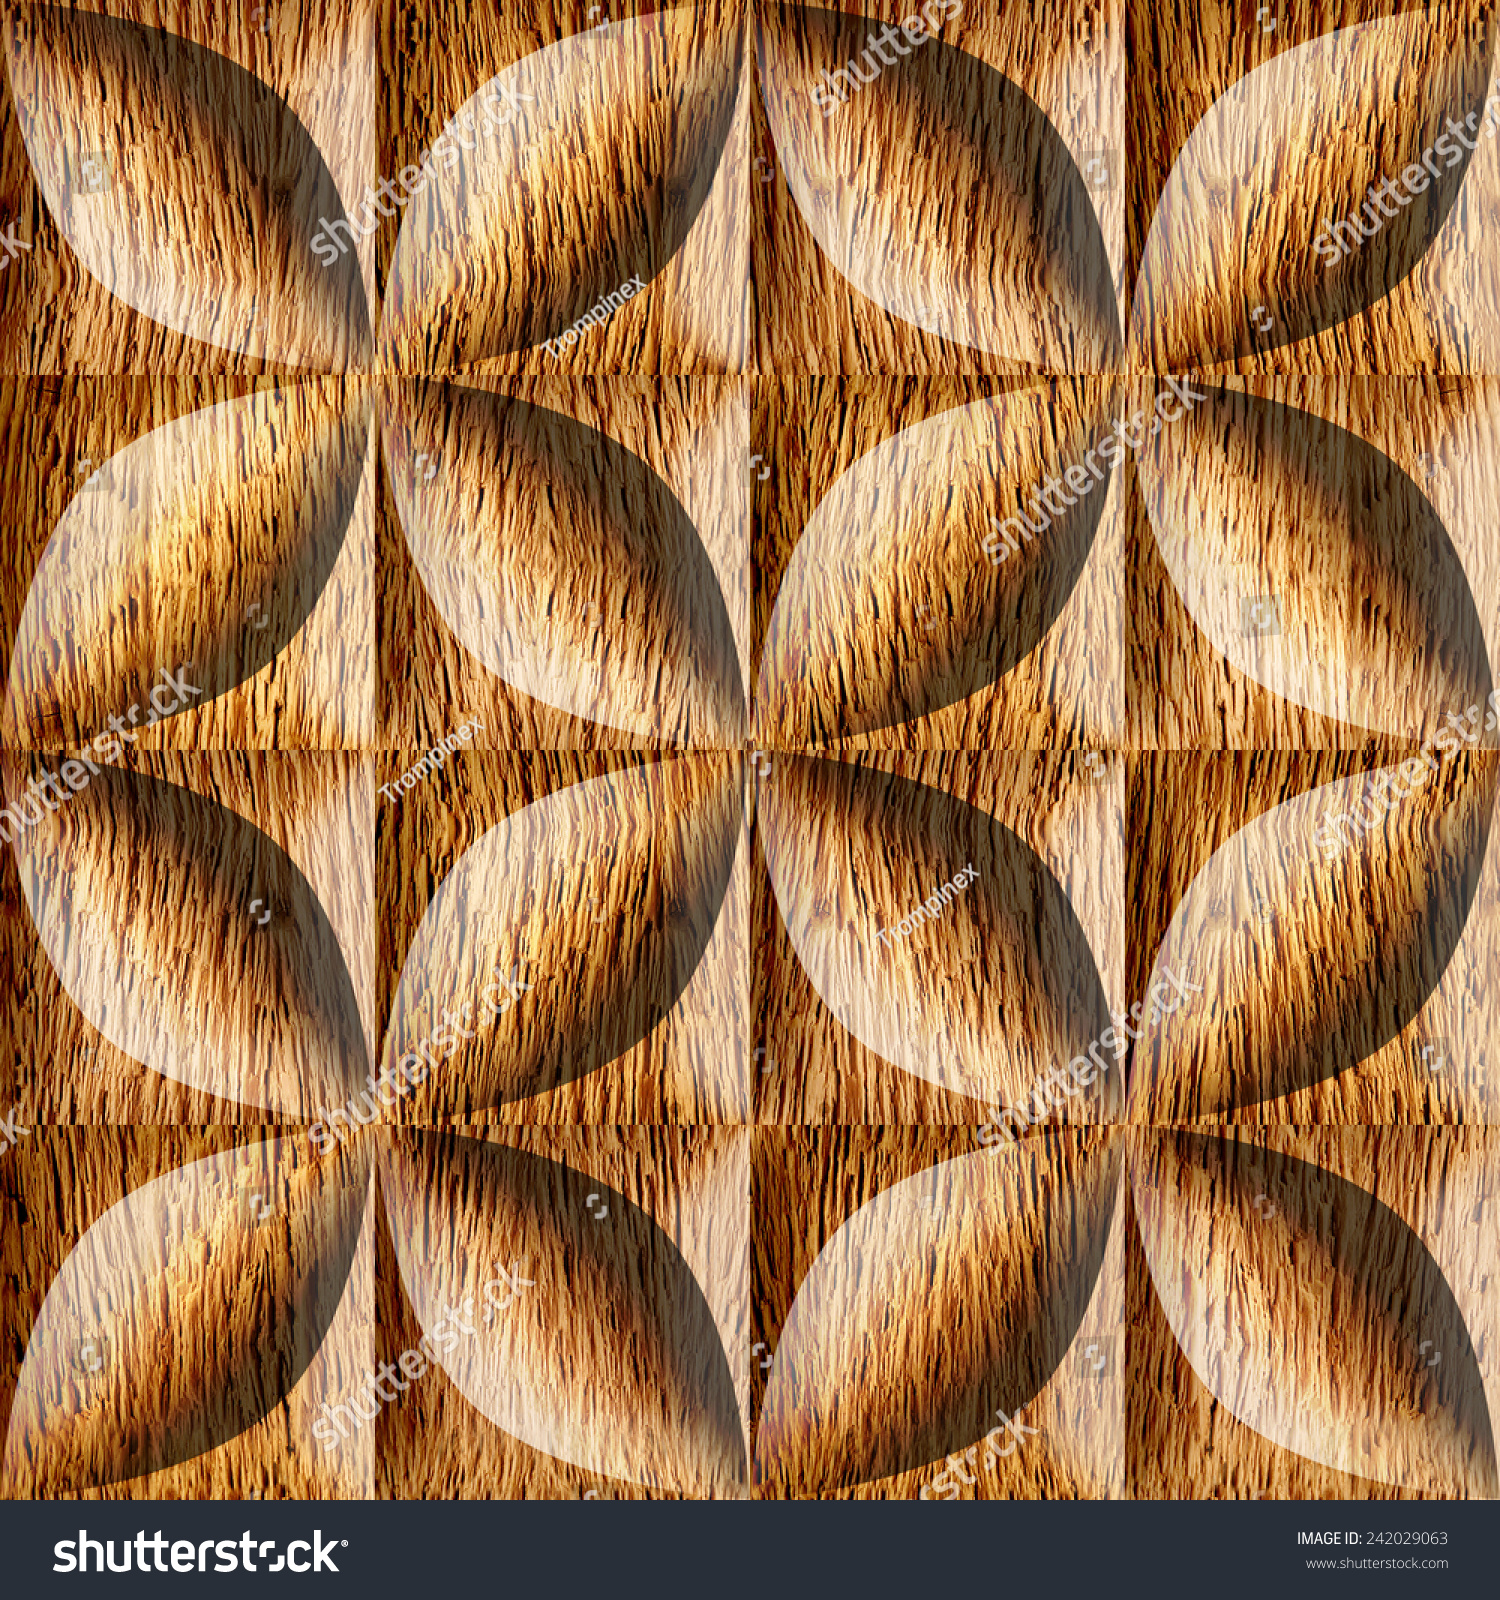 Abstract Decorative Tiles Decorative Petals Seamless Stock ...